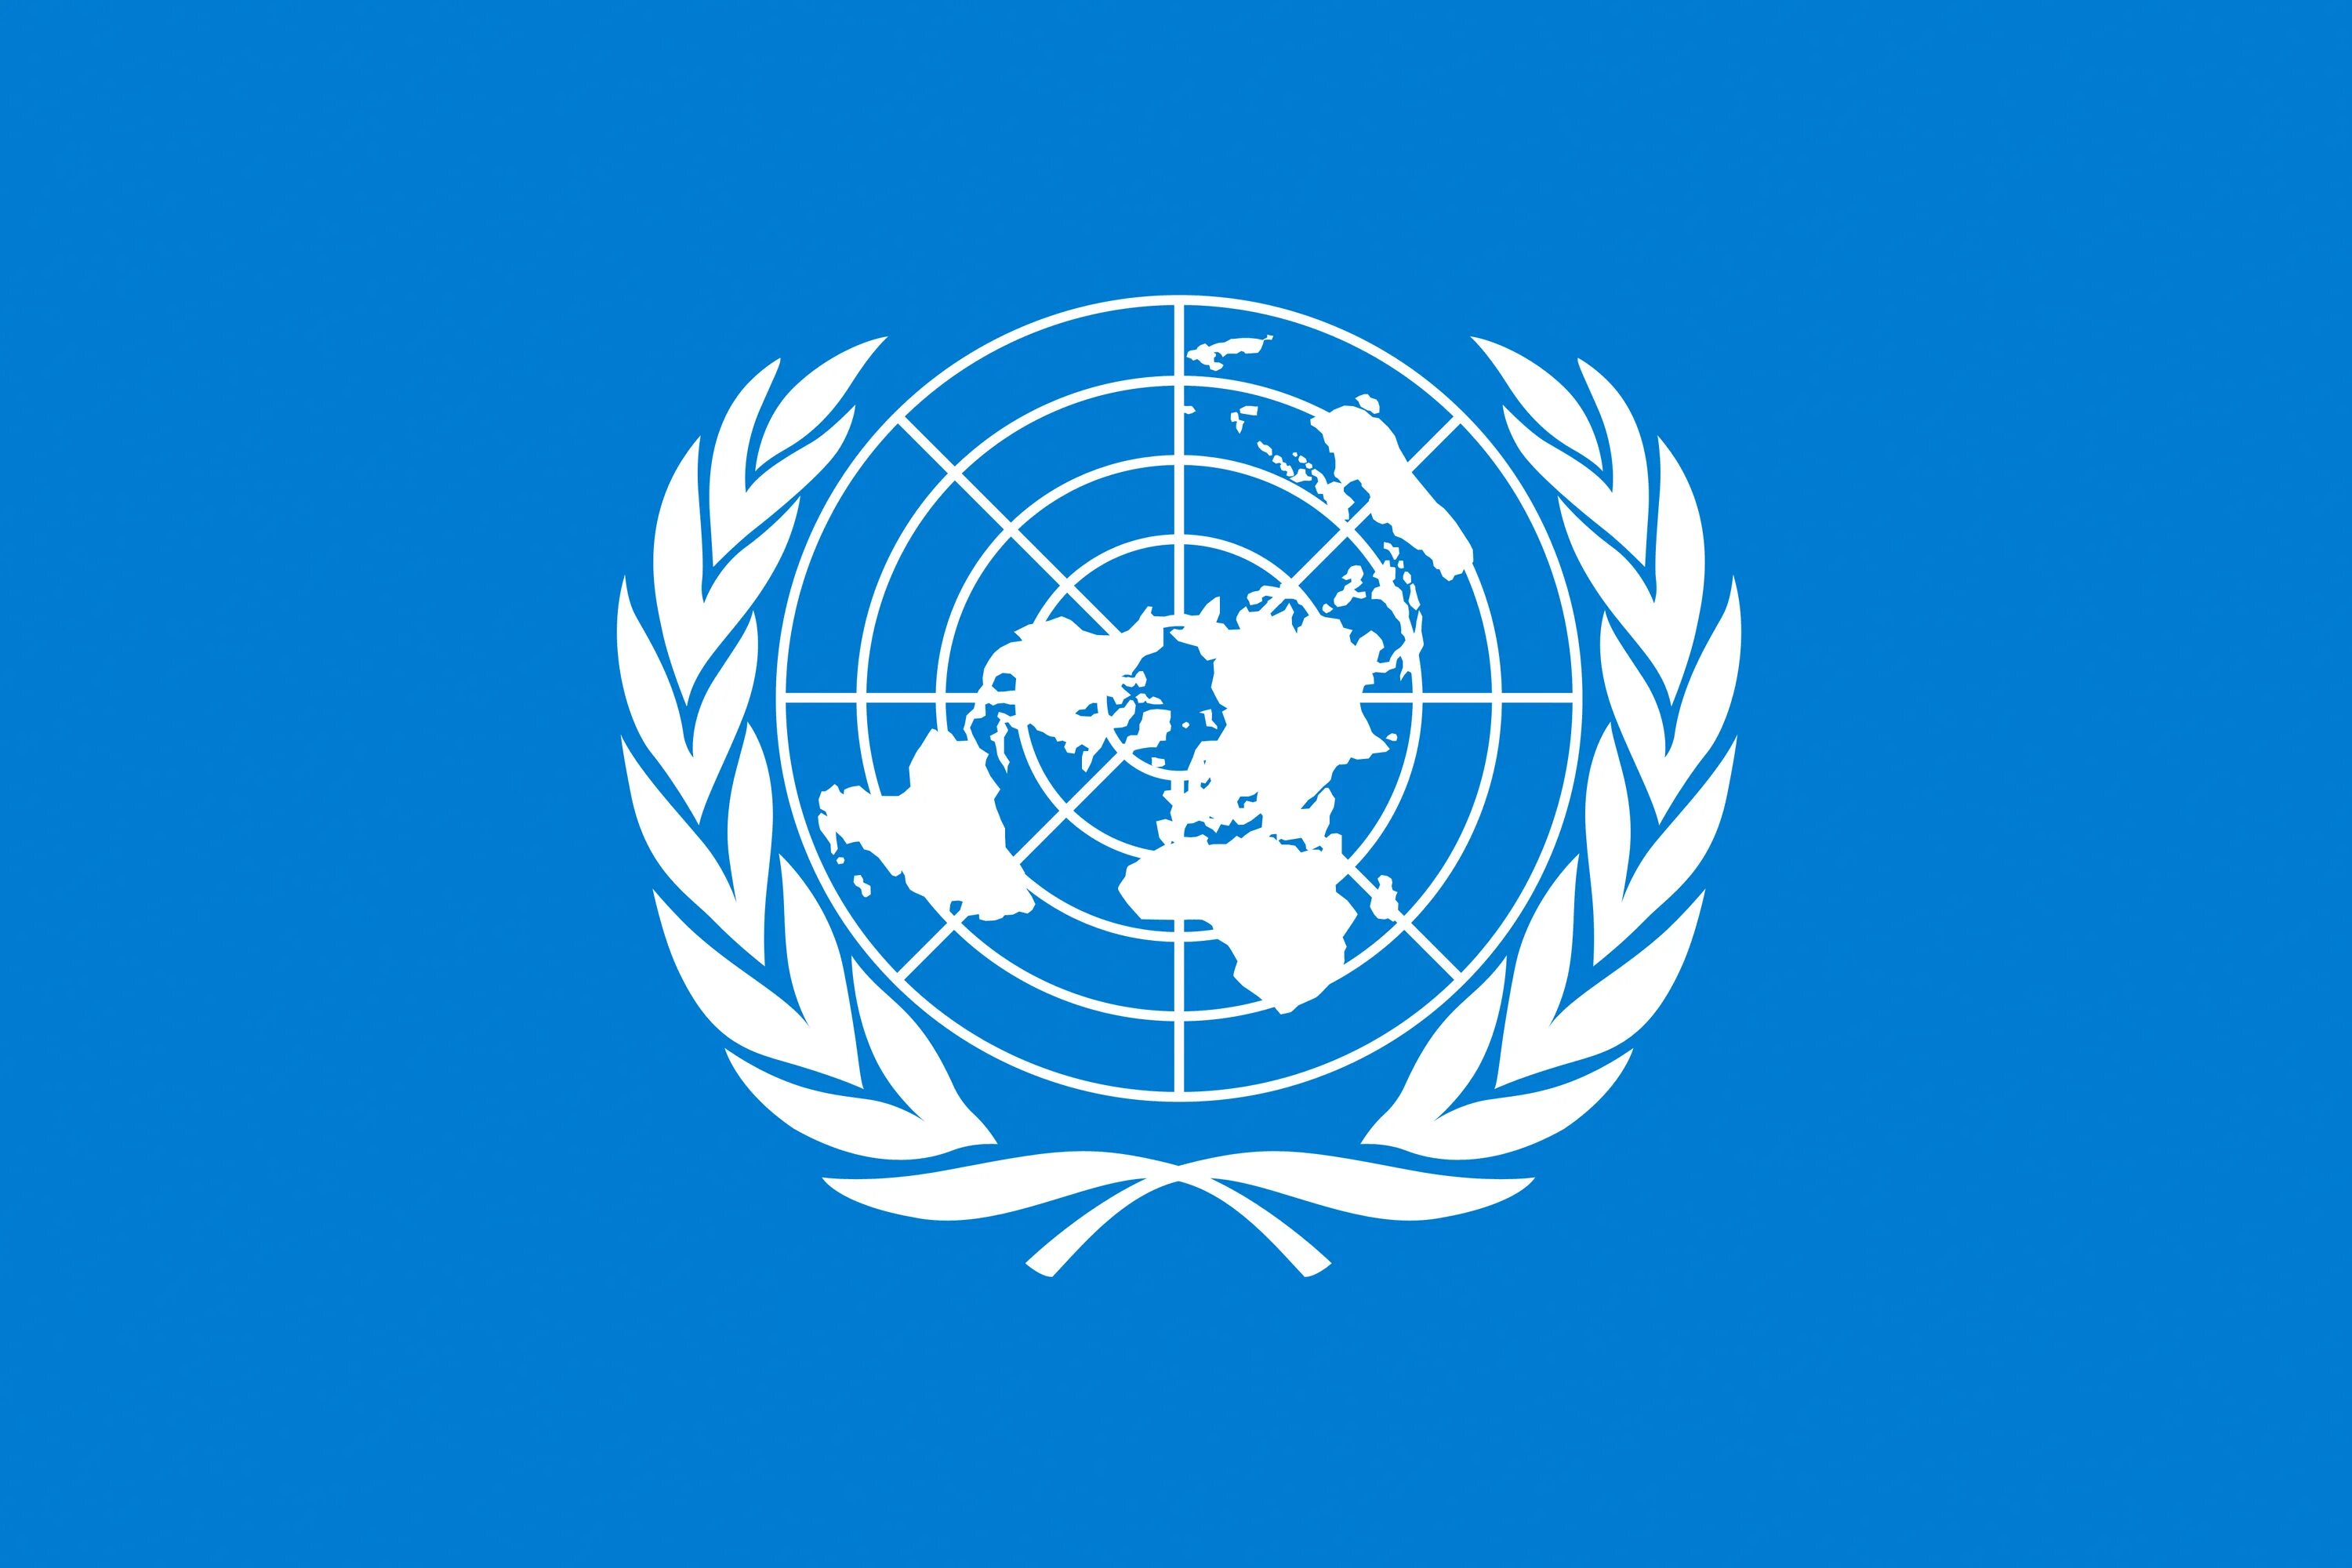 Флаг всемирной организации здравоохранения. Всемирная метеорологическая организация (WMO);. Флаг организации Объединенных наций. Организация Объединенных наций (ООН). Оон против российской федерации